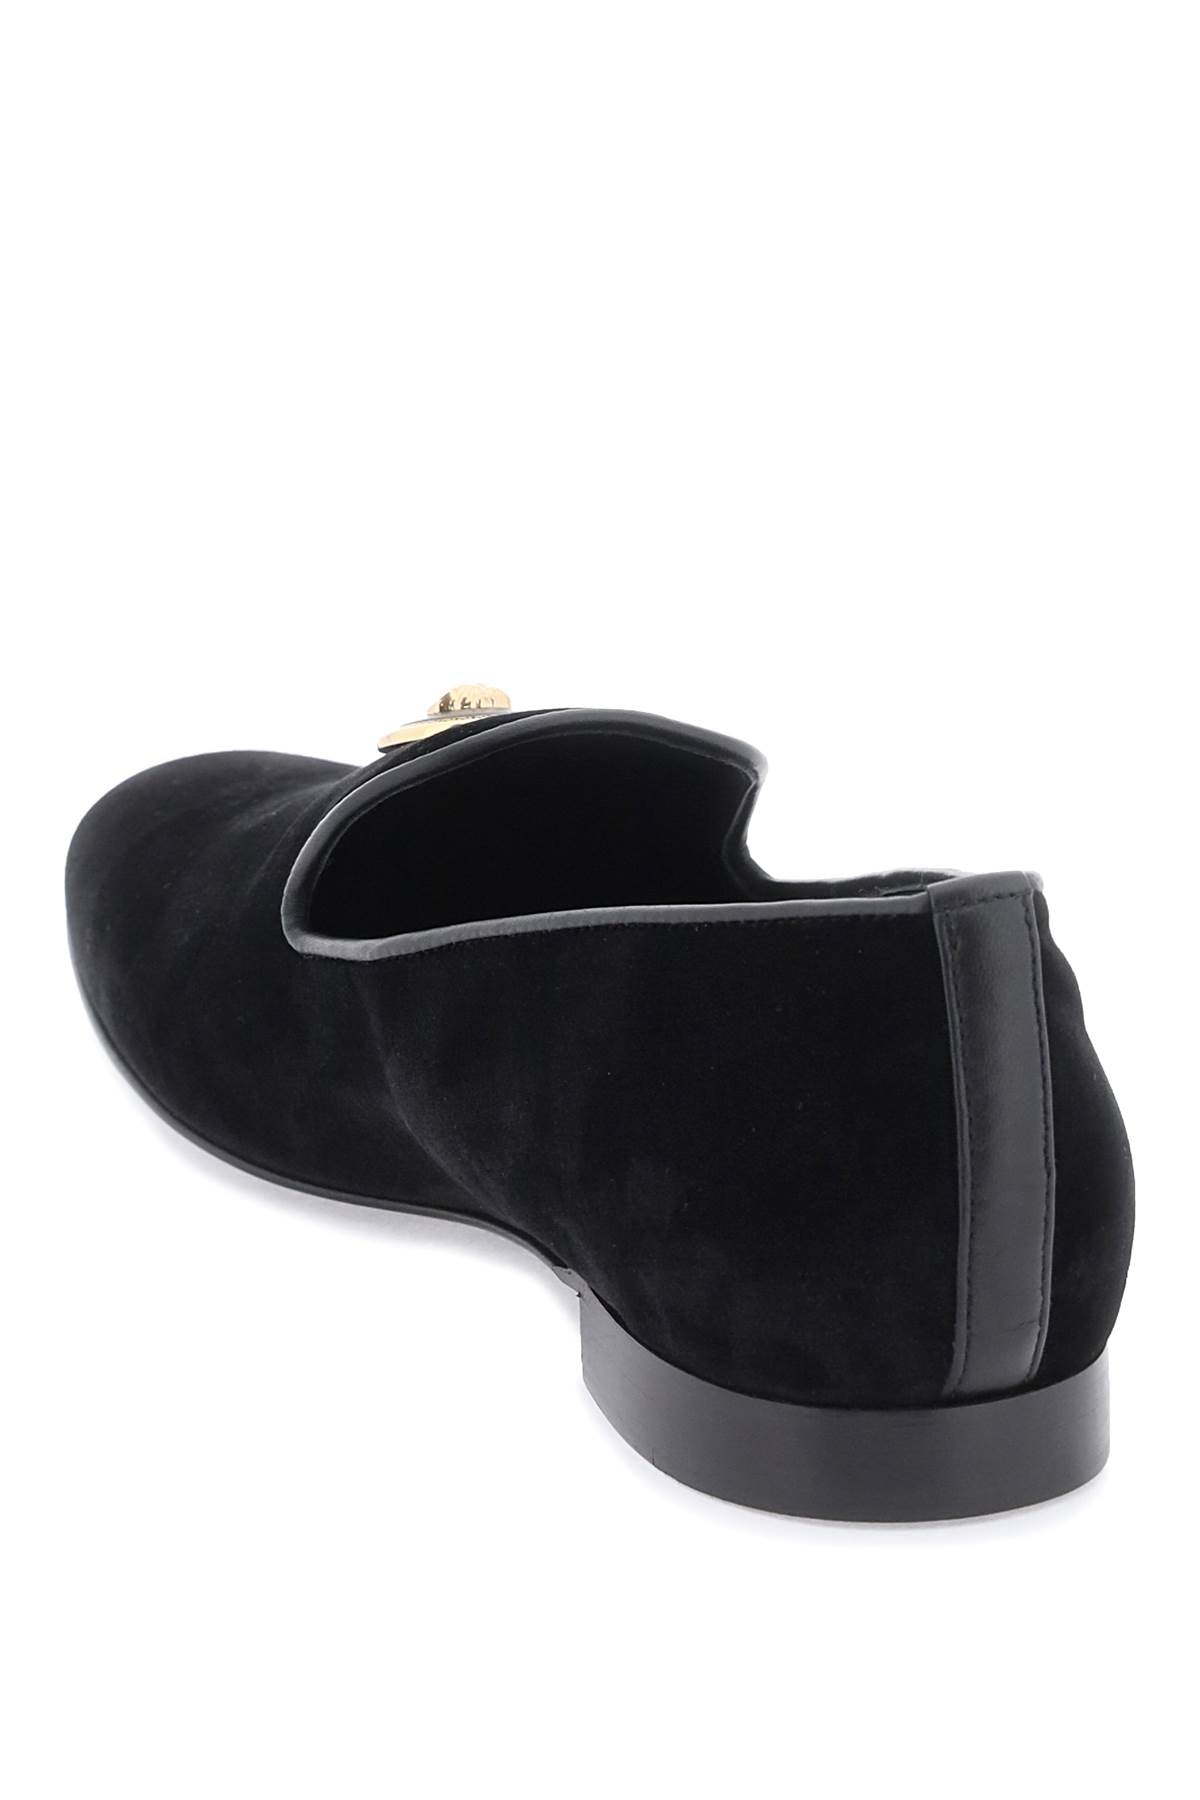 Versace velvet medusa loafers-2